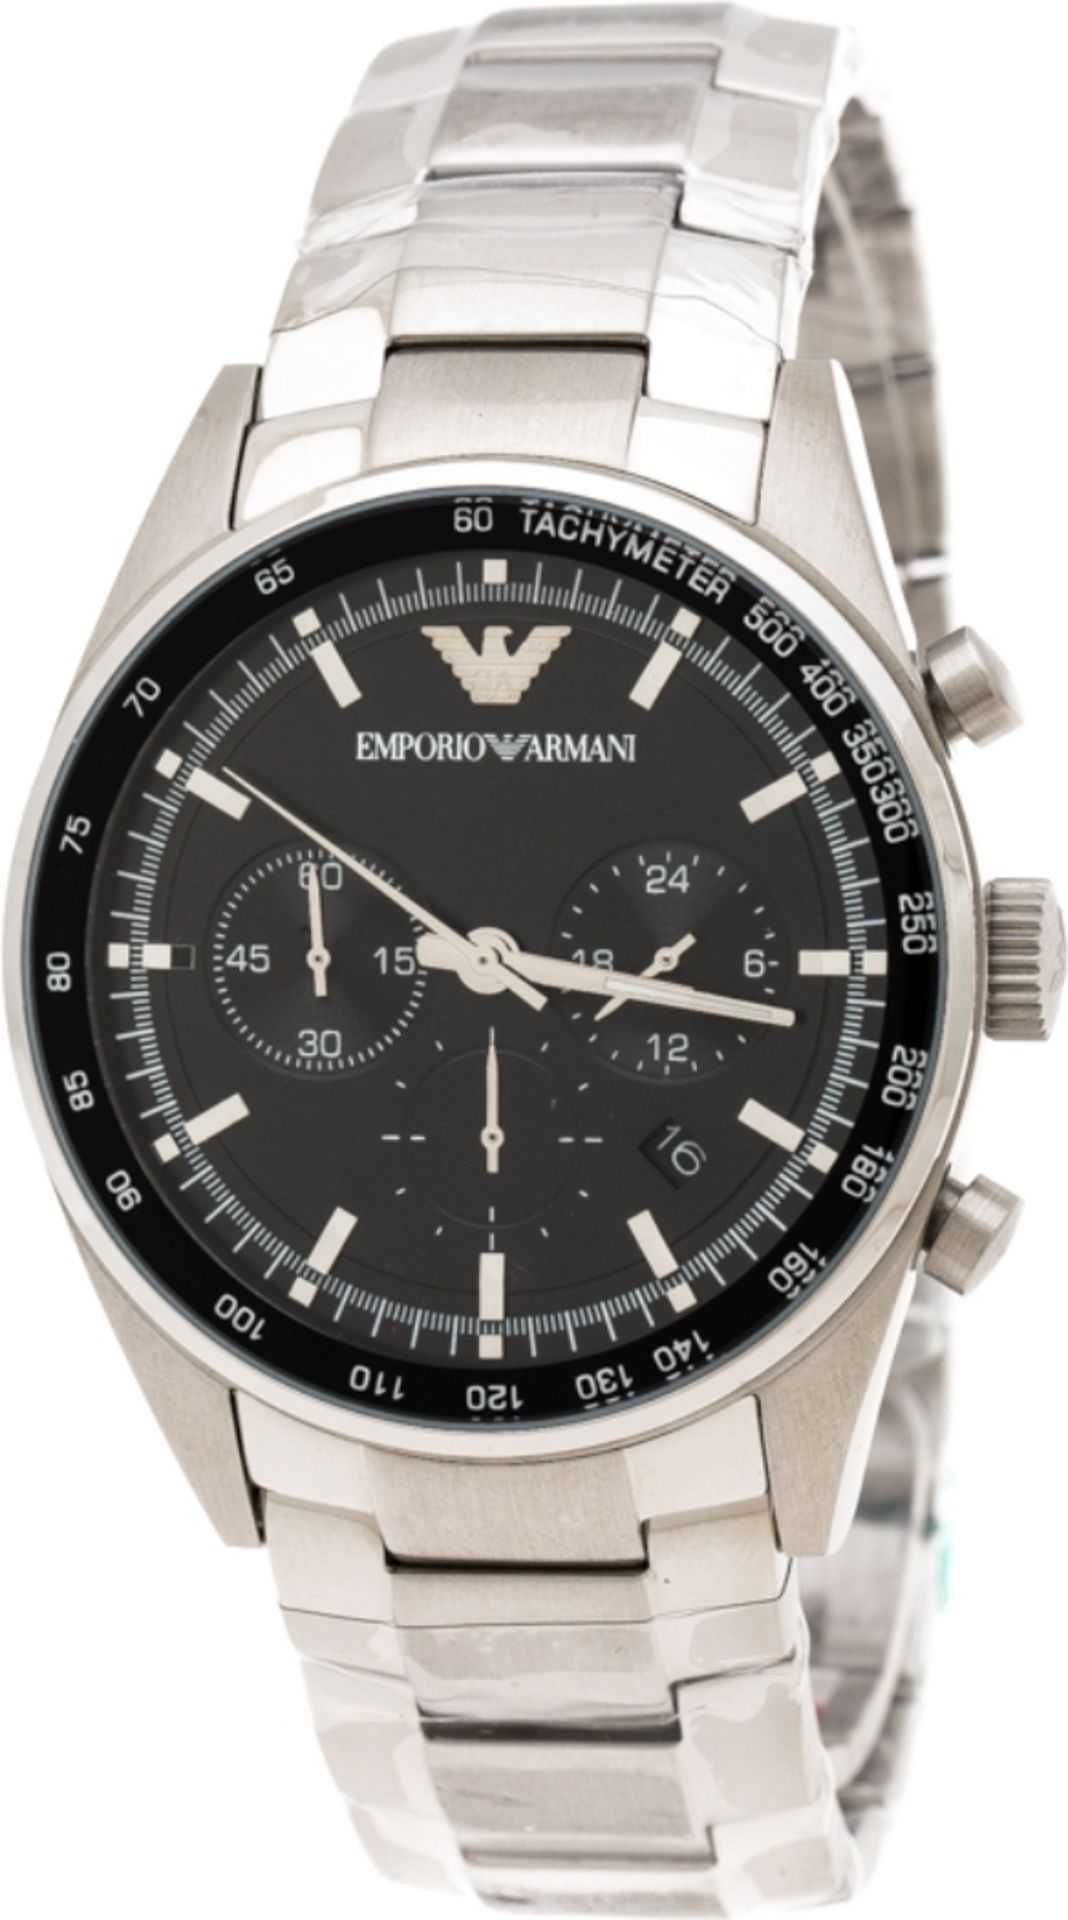 Emporio Armani AR5980 Men's Sportivo Black Dial Silver Bracelet Quartz Chronograph Watch - Image 5 of 8